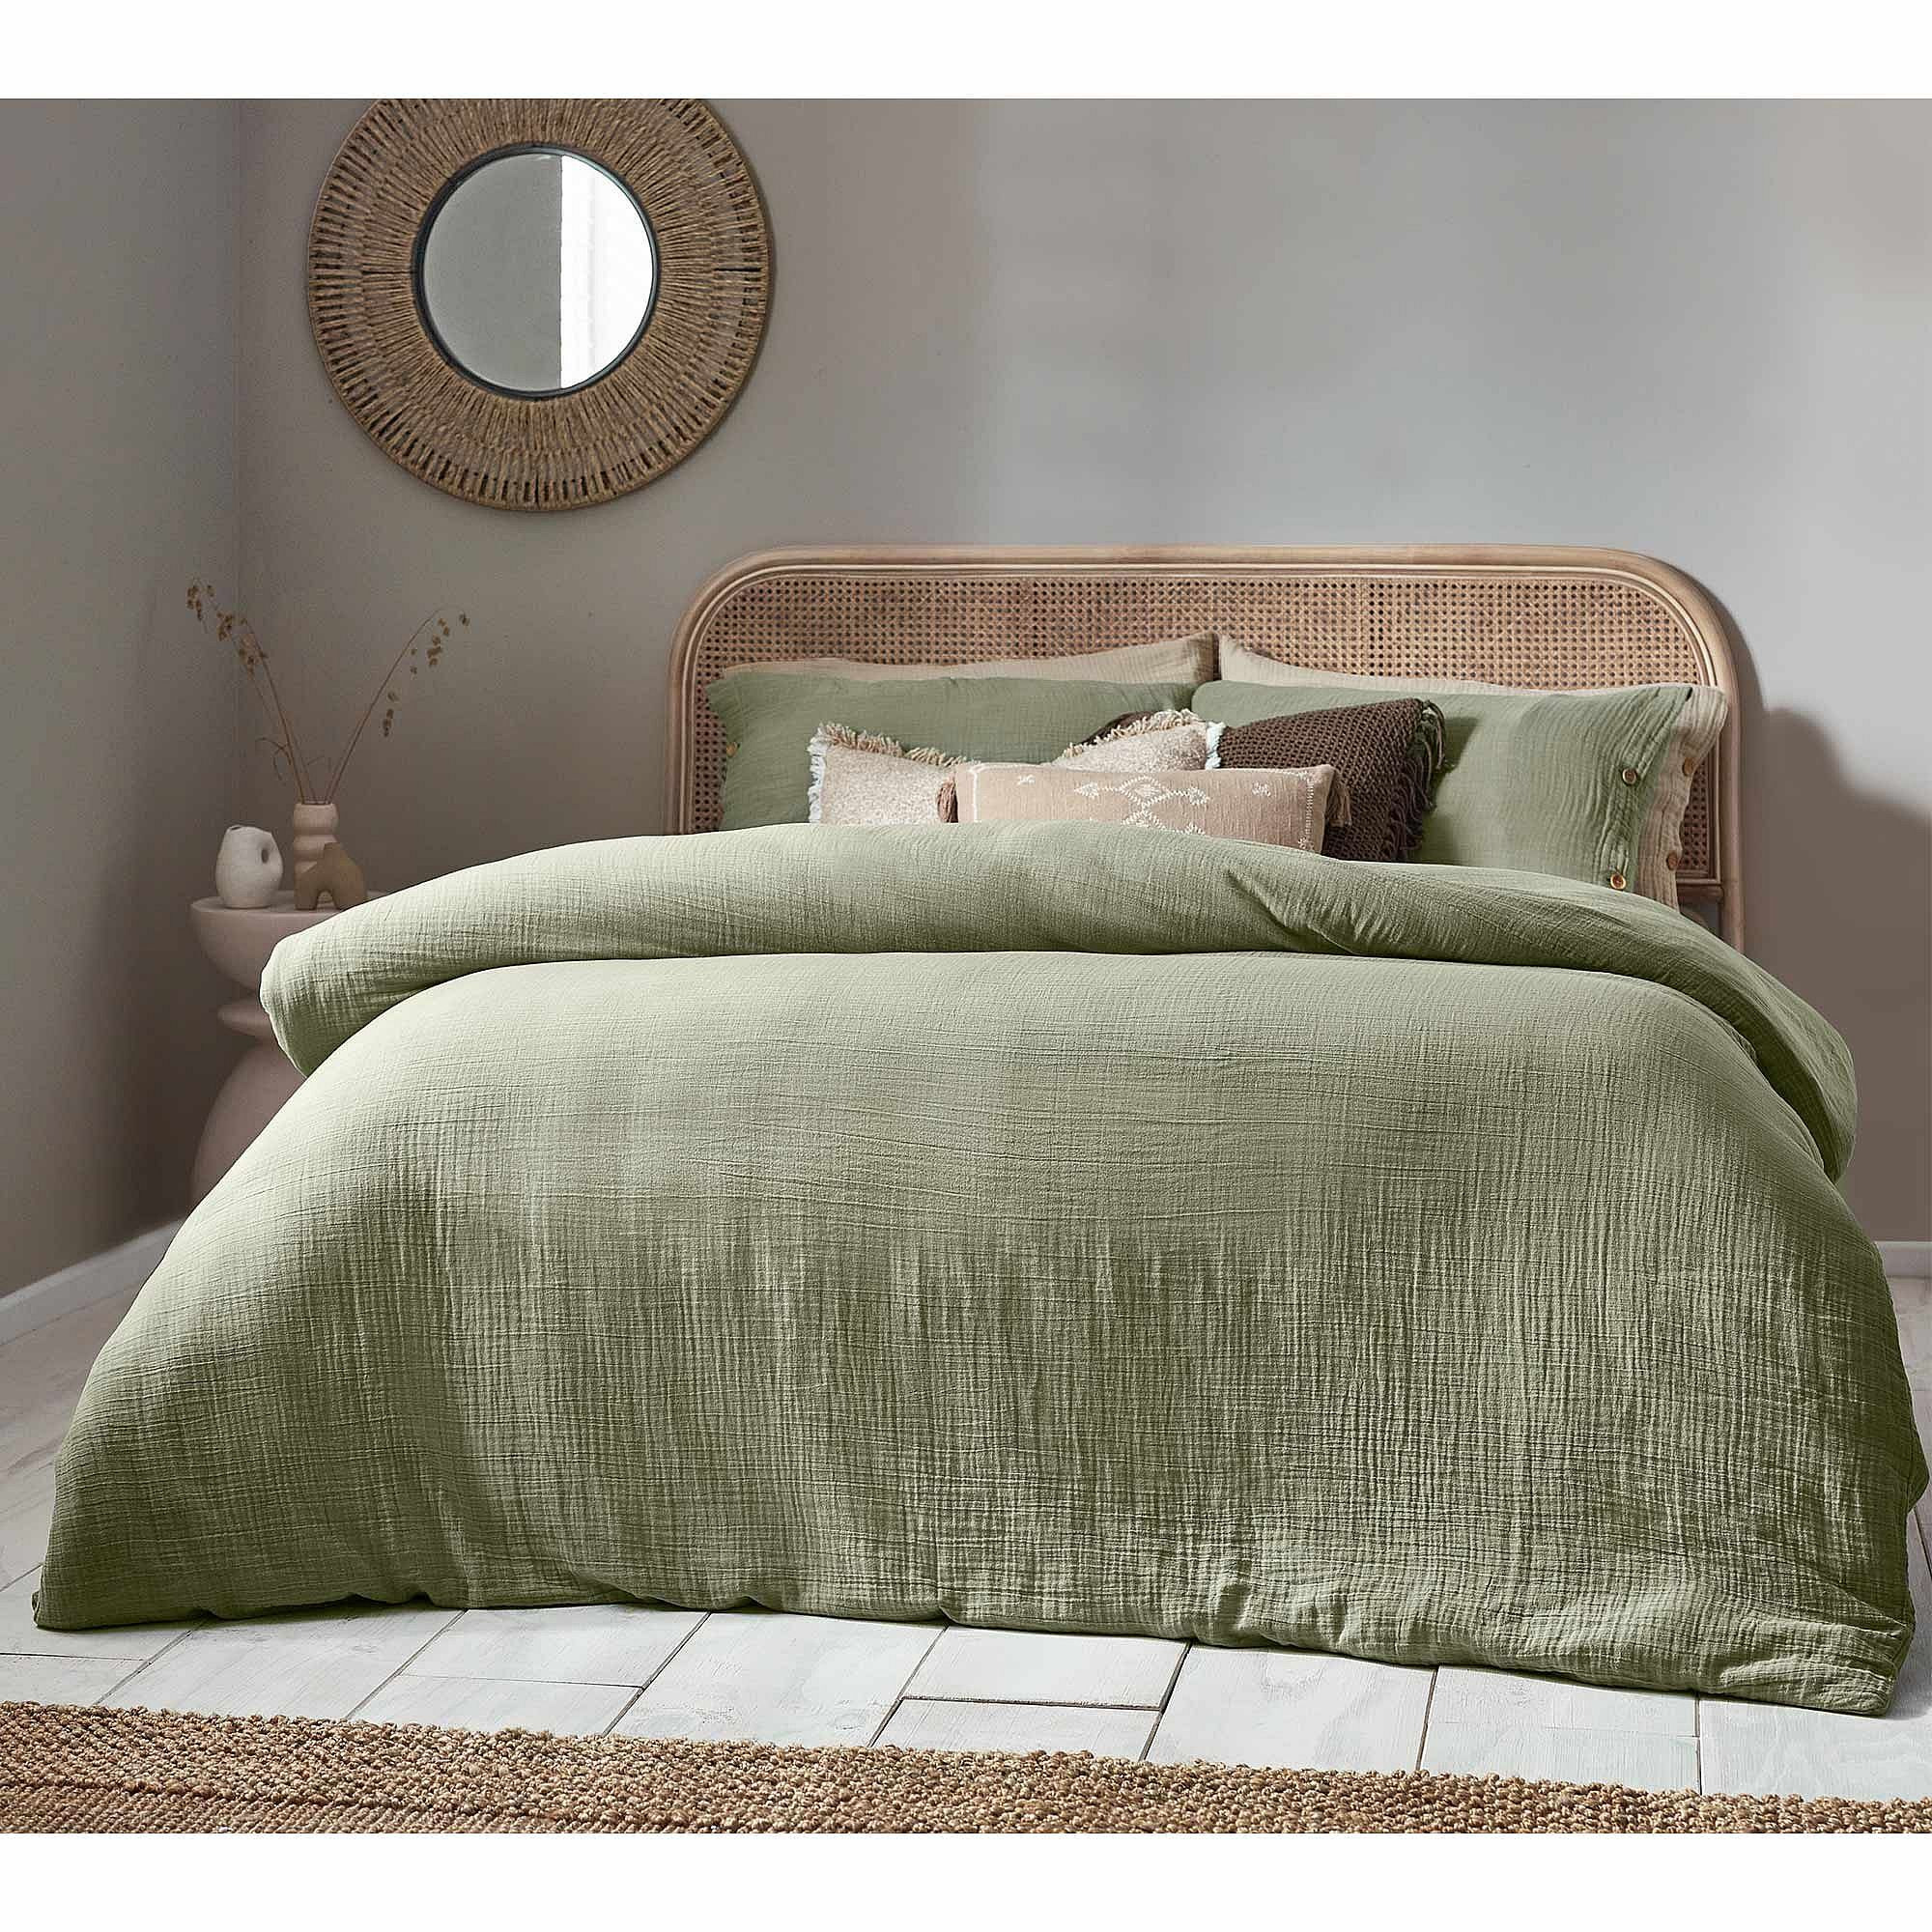 Apricity Sage Green Crinkle Bed Linen Set (Single Set) - image 1